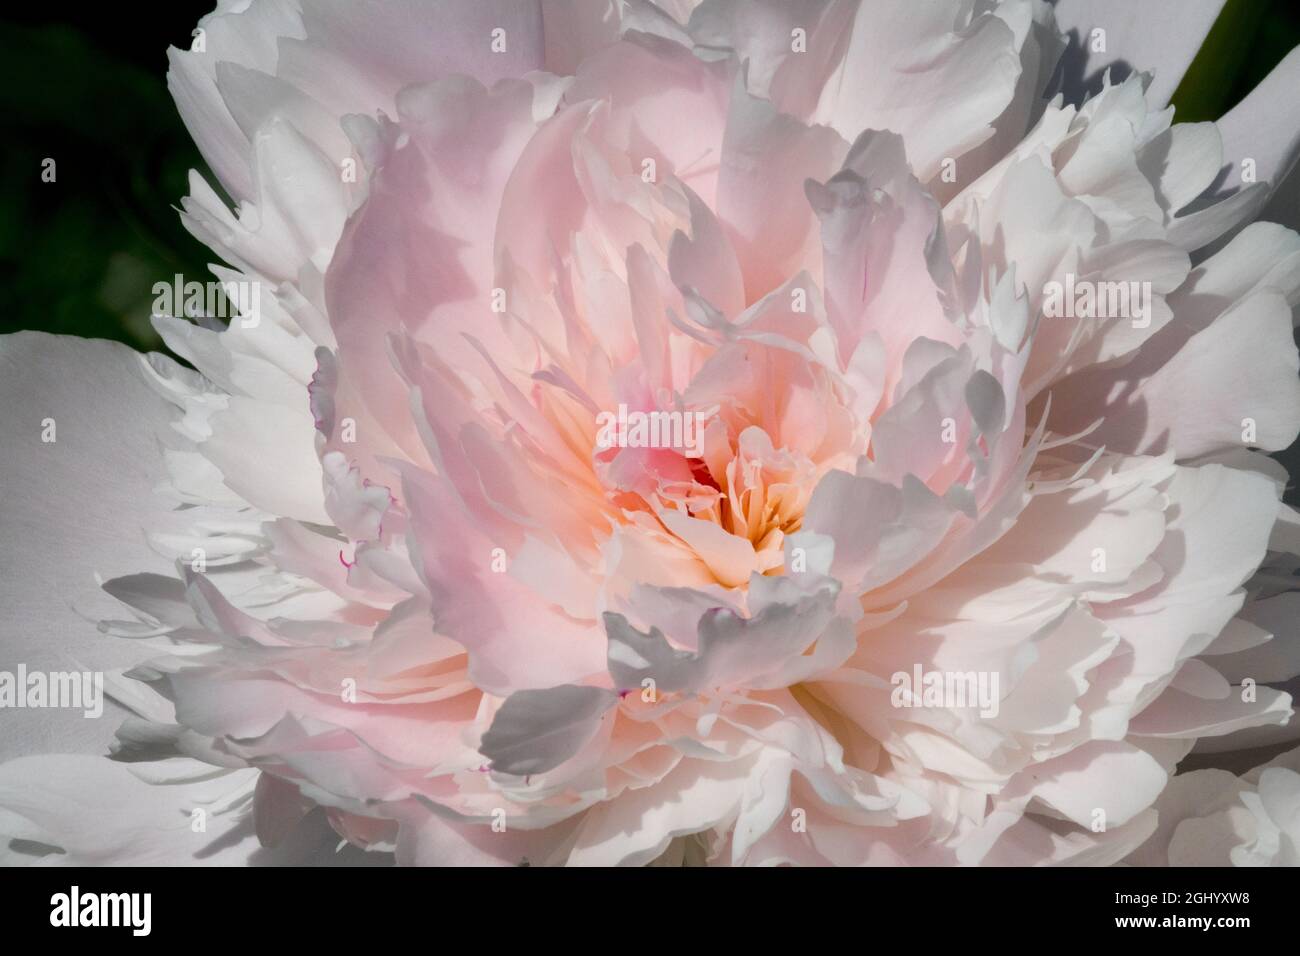 Pivoine blanche Paeonia 'Noemie Demay' rose teinte fleur rose douce couleur rose Banque D'Images